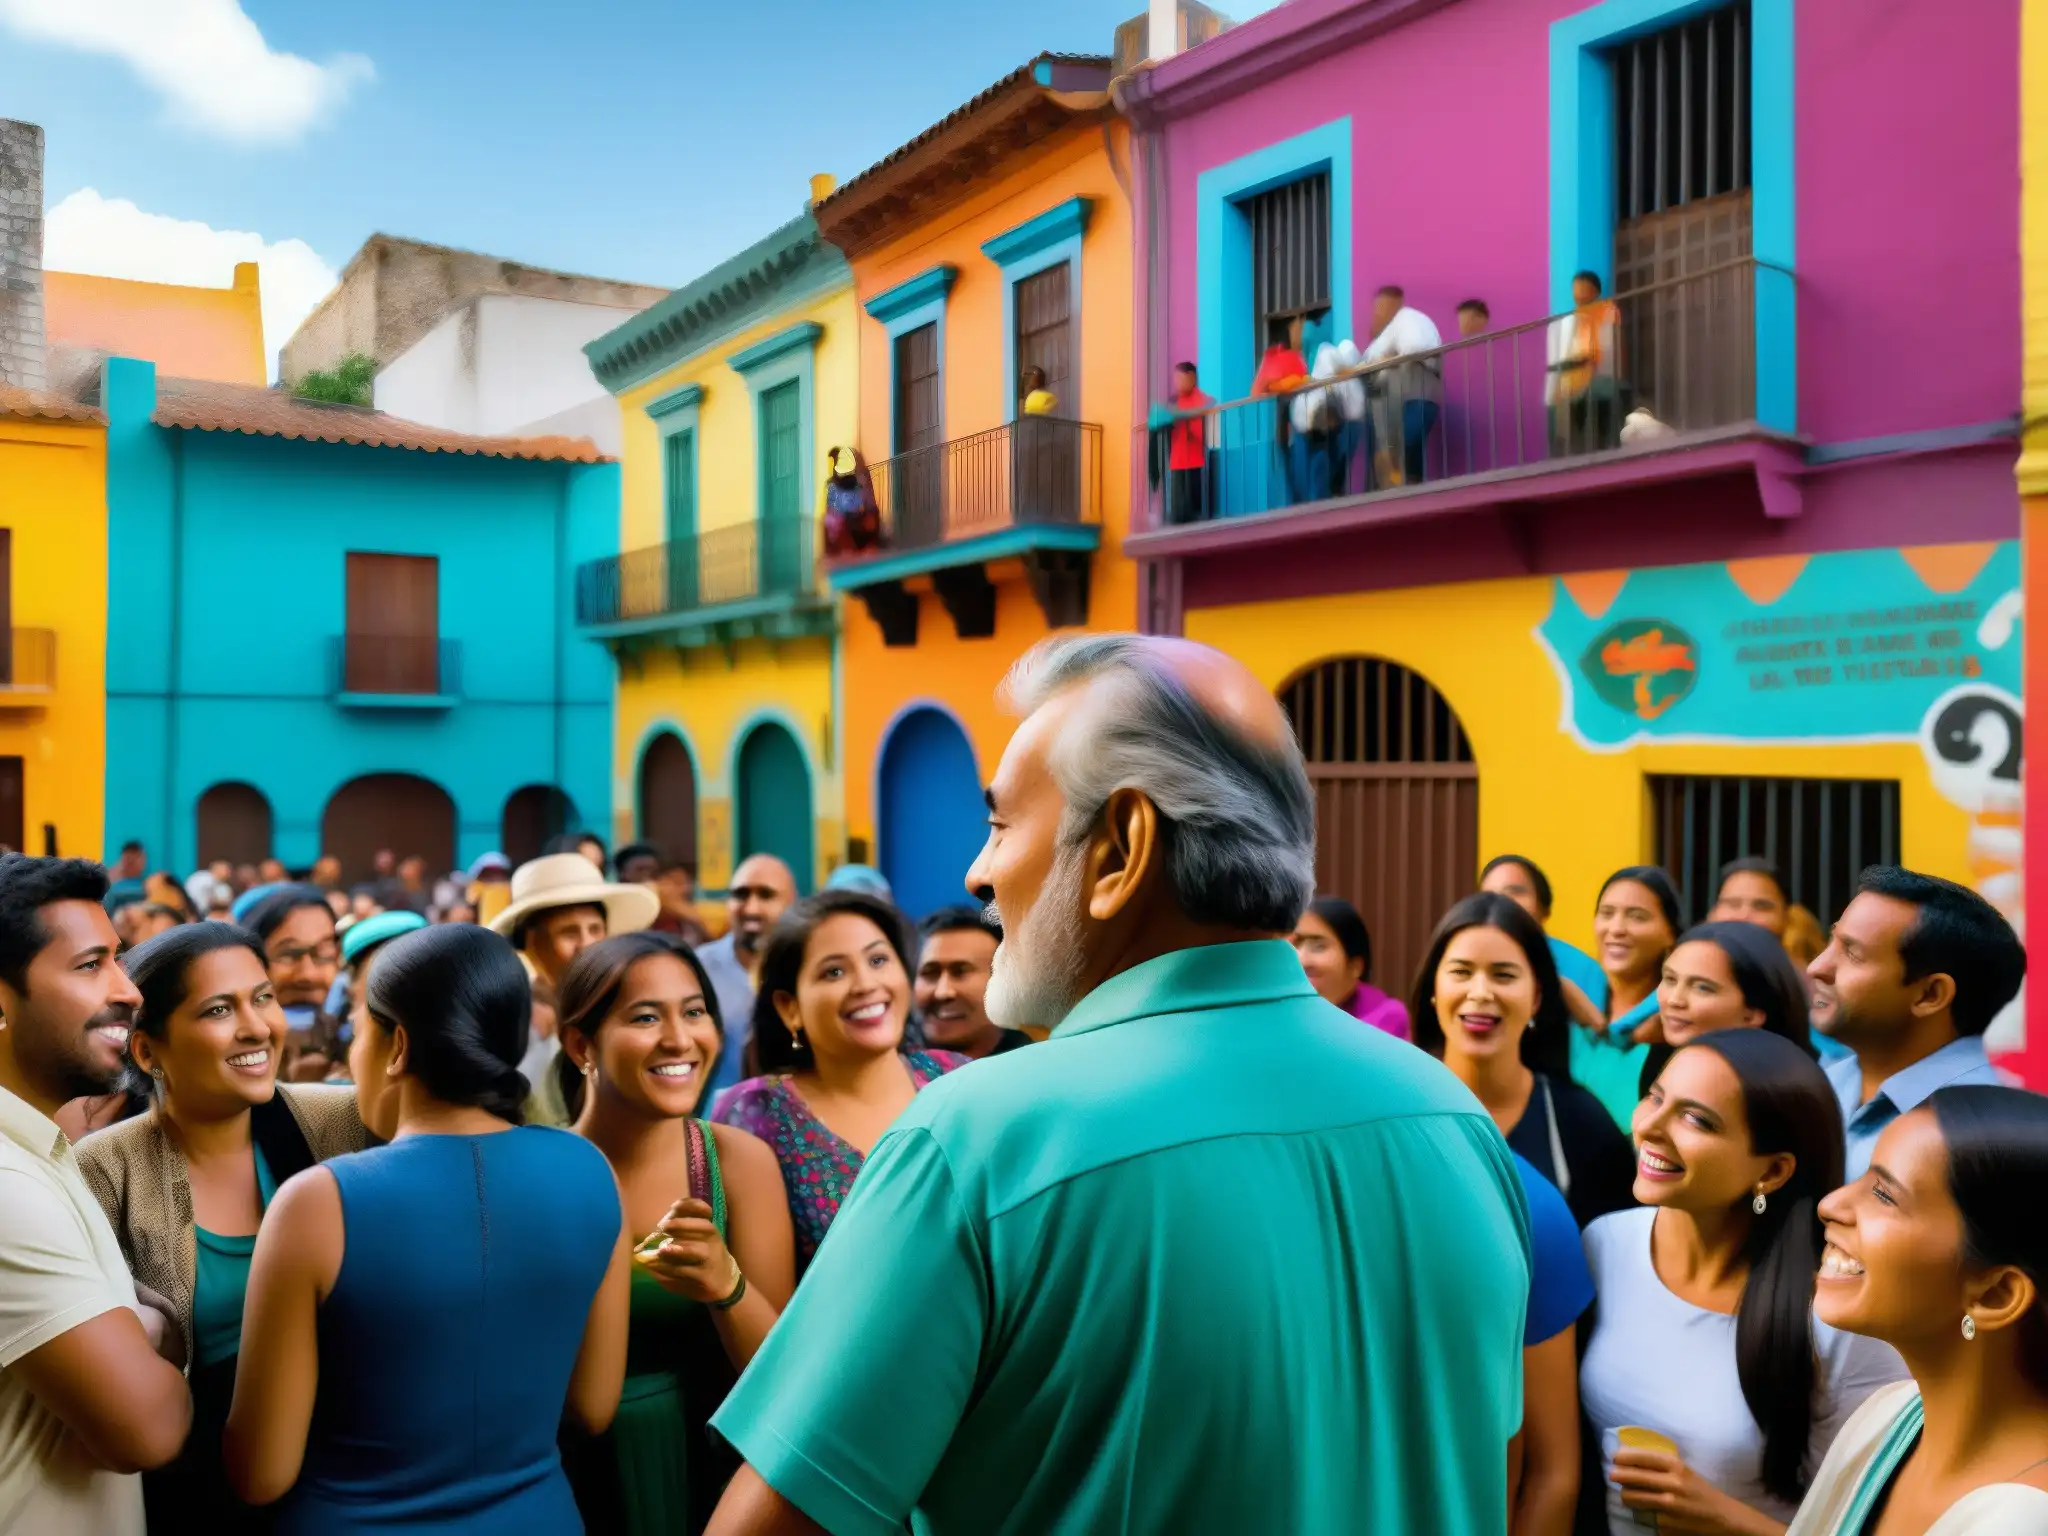 Coloridas leyendas urbanas presidentes América Latina cobran vida en una bulliciosa calle llena de arte callejero y un cuentacuentos cautivador